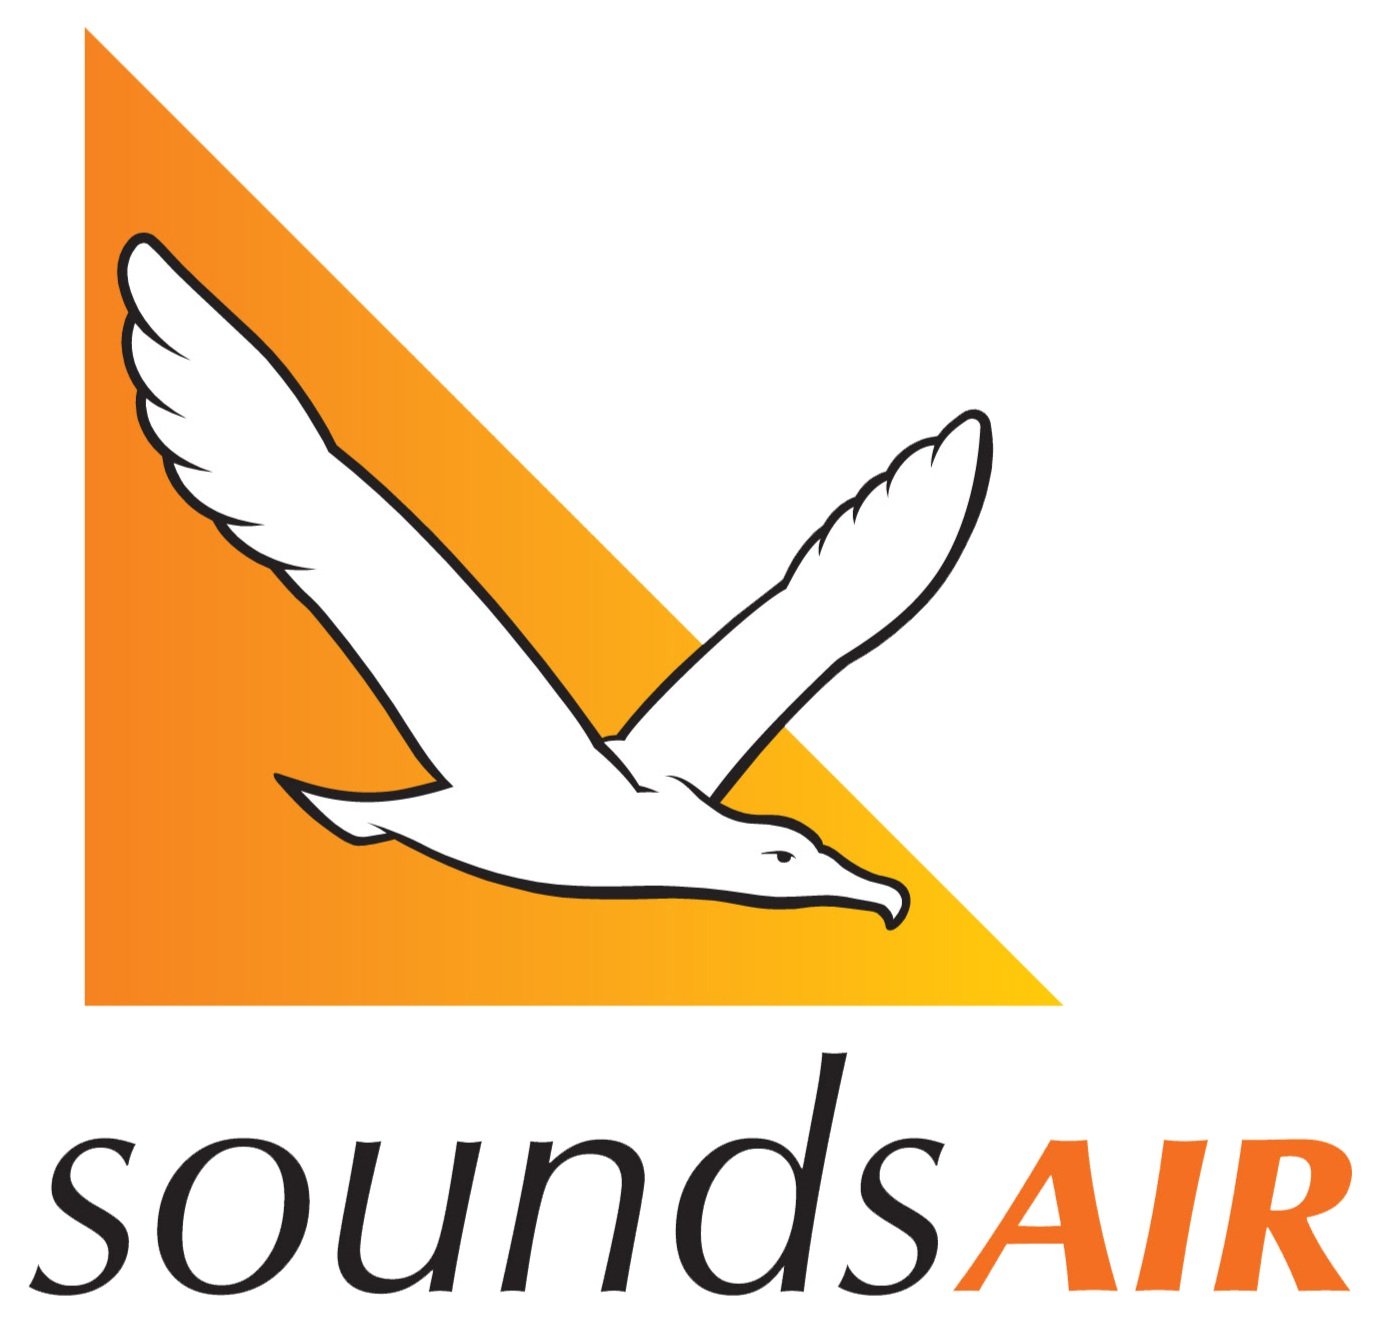 Sounds-Air-logo.jpg